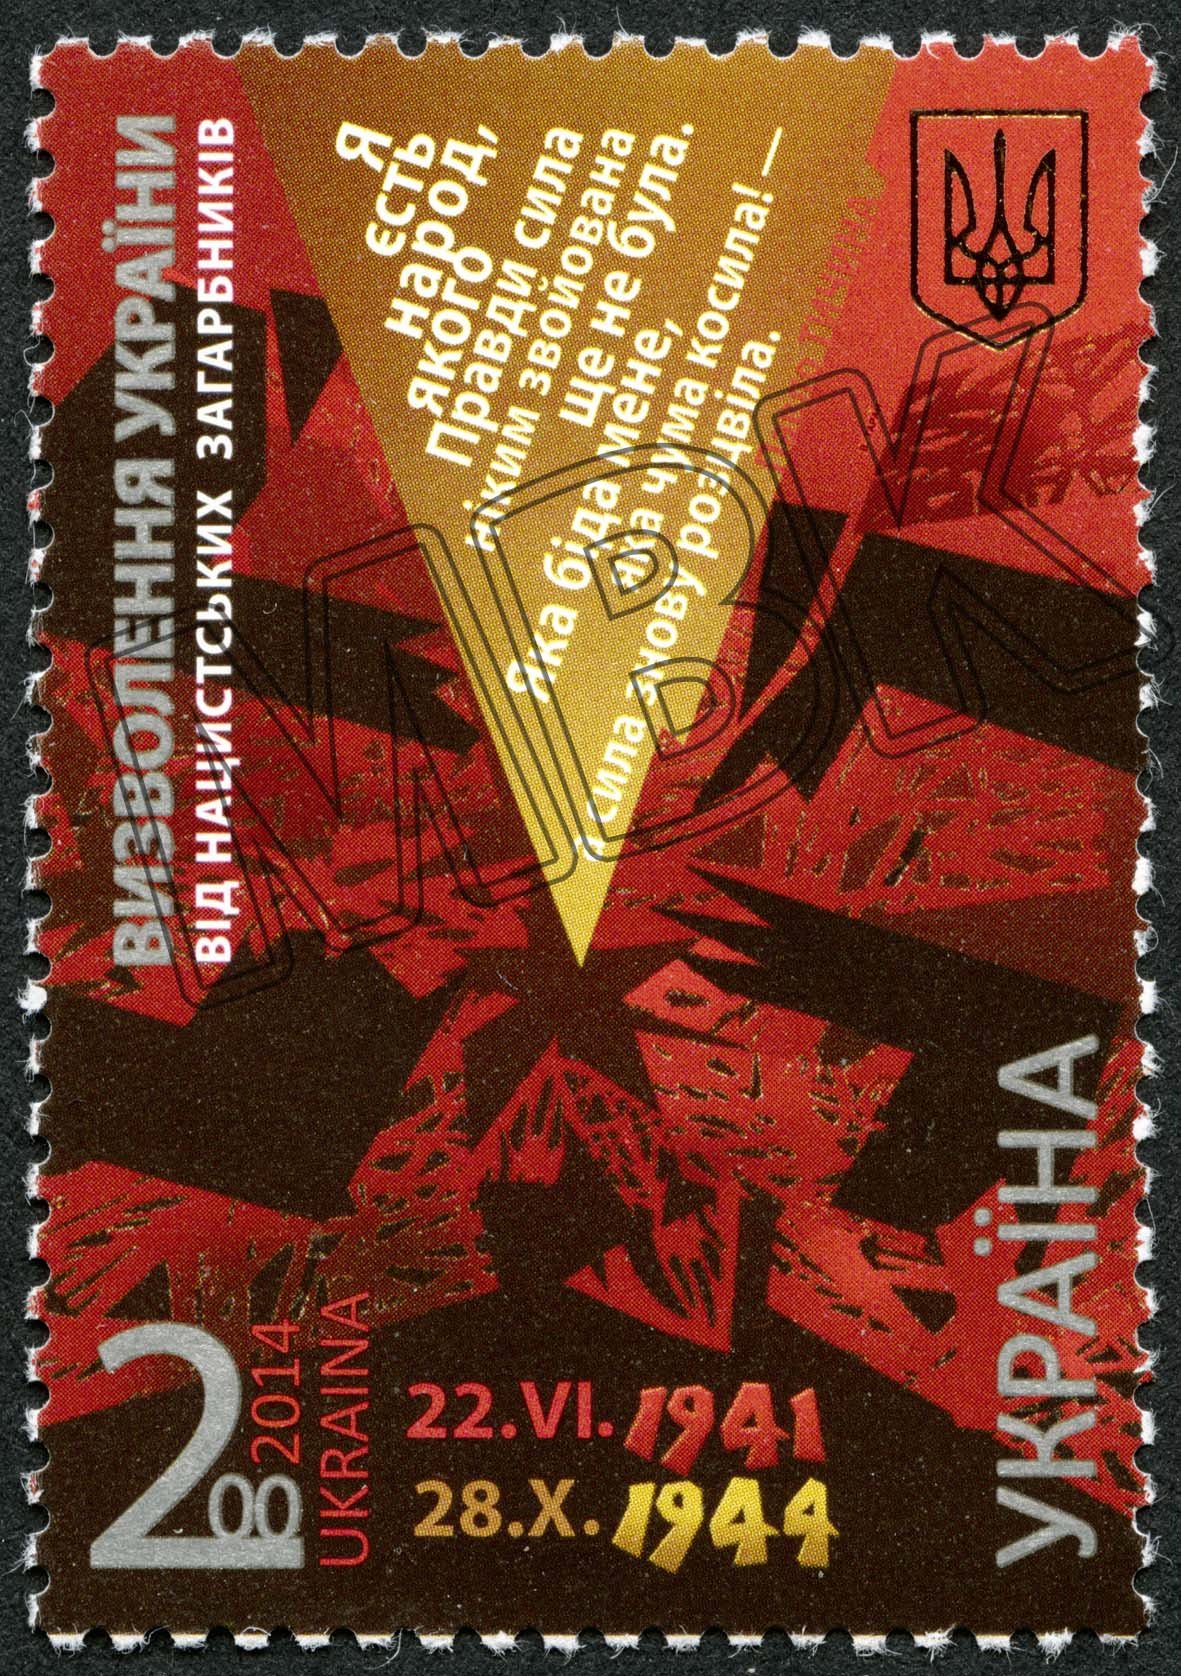 Briefmarke "Befreiung der Ukraine von den nazistischen Besatzern - 22.VI.1941-28.X.1944, Ukraine, 2014 (Museum Berlin-Karlshorst CC BY-NC-SA)